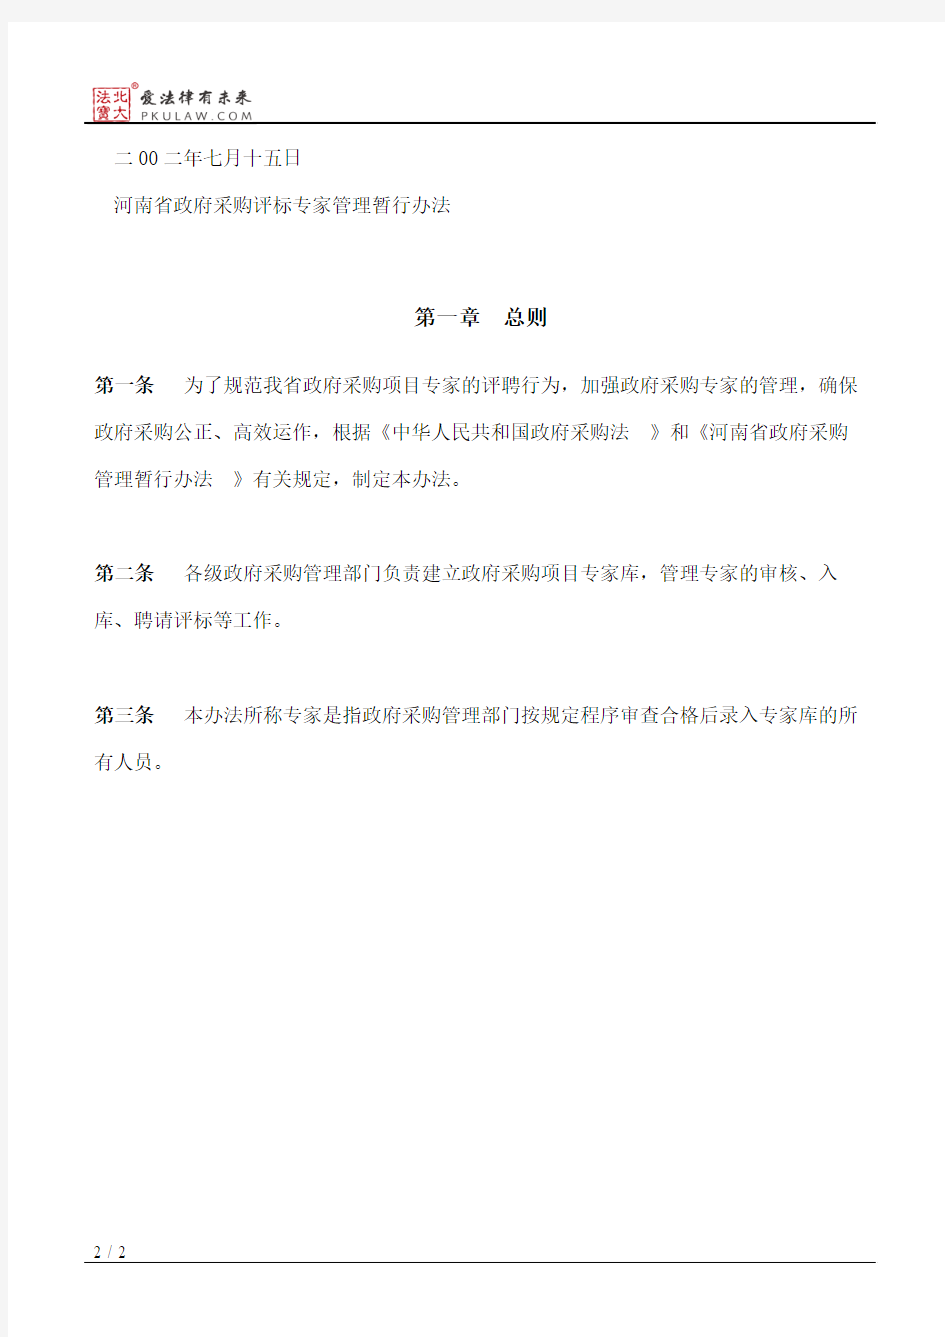 河南省财政厅关于印发《河南省政府采购评标专家管理暂行办法》的通知